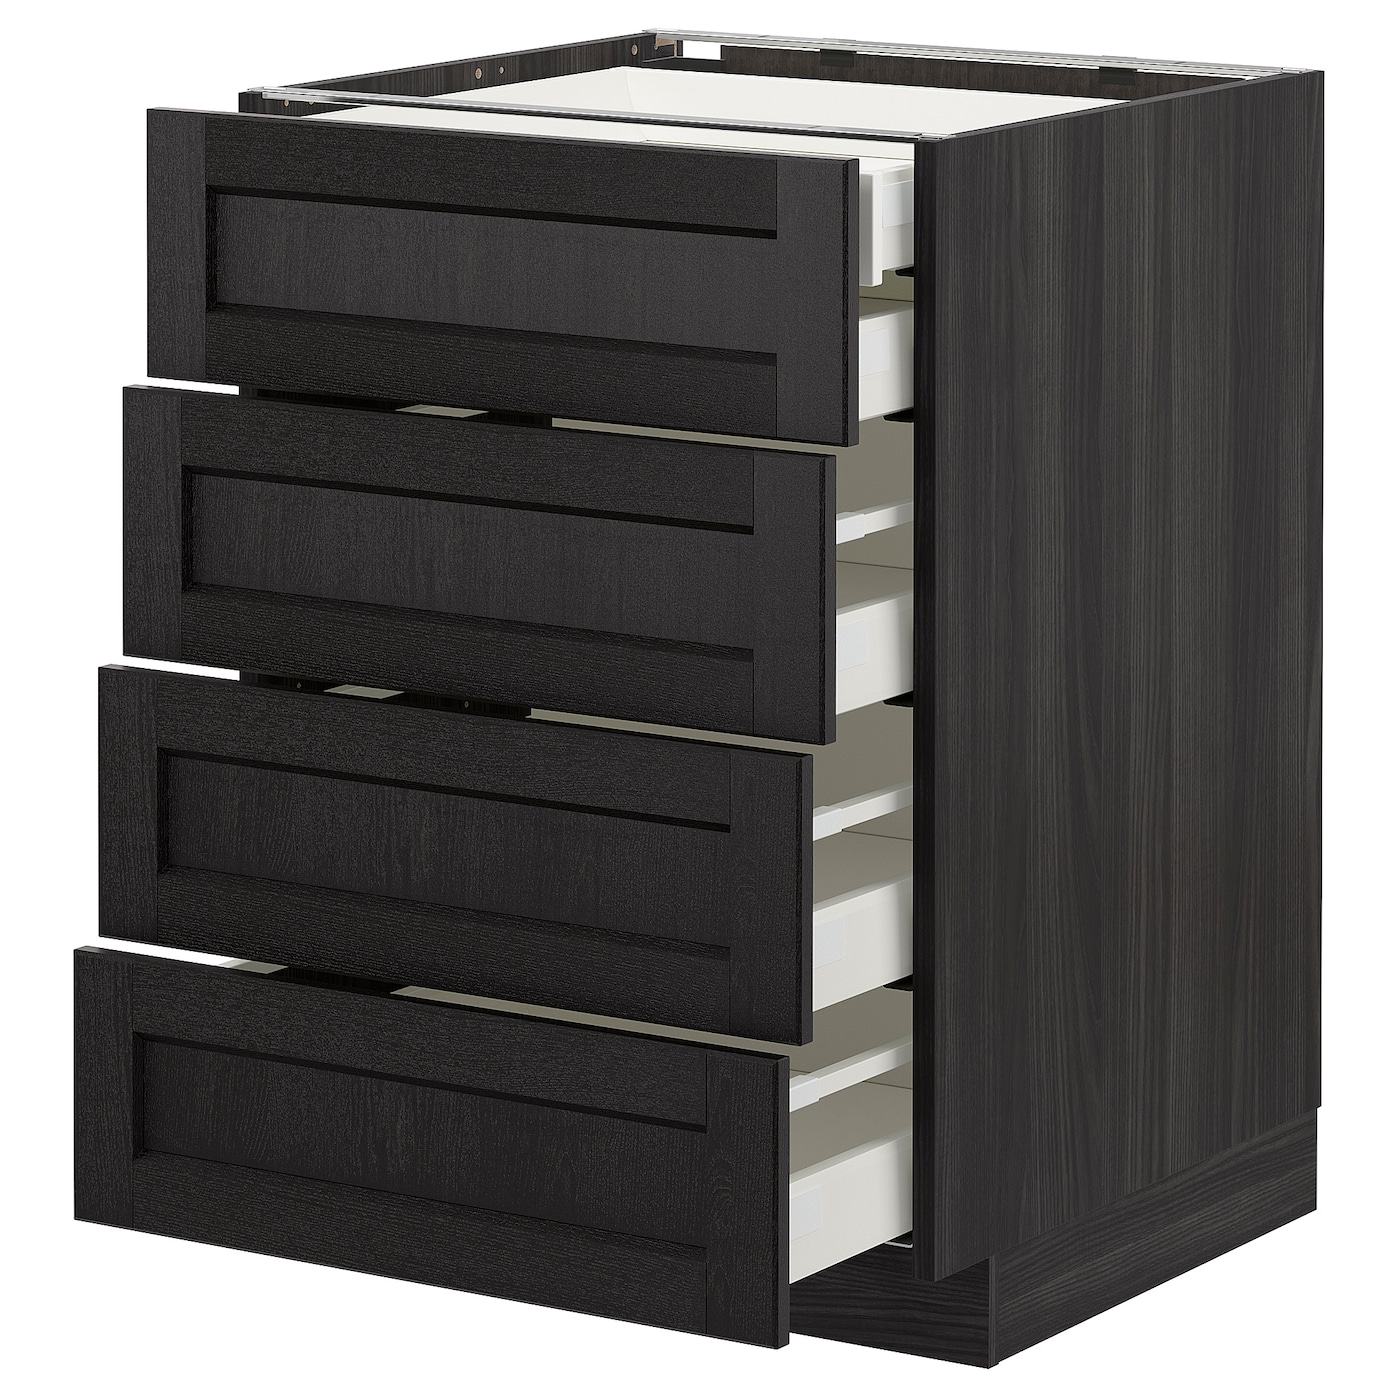 Напольный кухонный шкаф  - IKEA METOD MAXIMERA, 88x62x60см, черный, МЕТОД МАКСИМЕРА ИКЕА